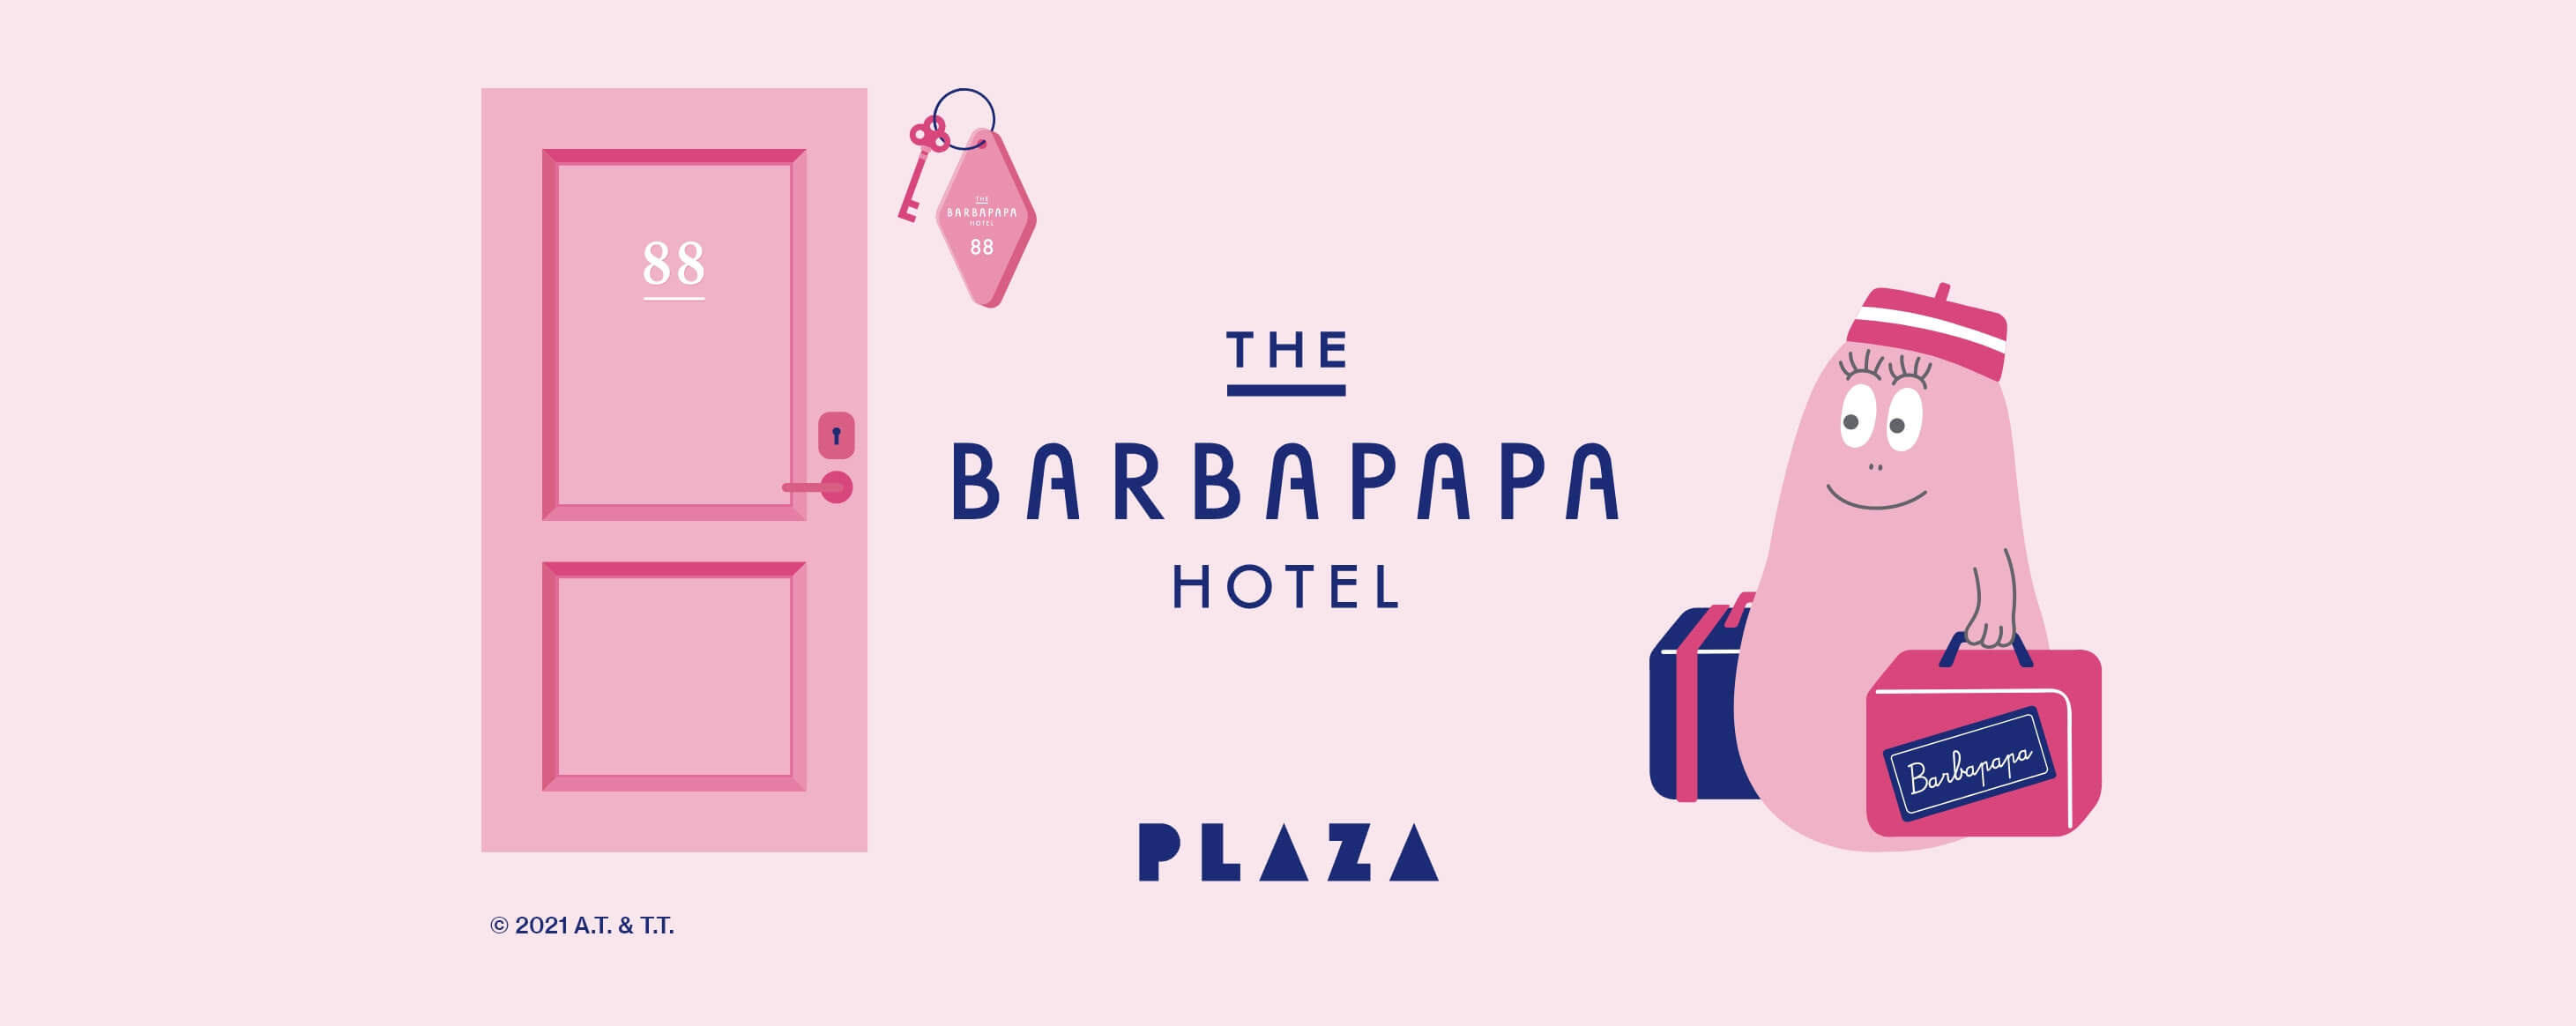 THE BARBAPAPA HOTEL │ PLAZA